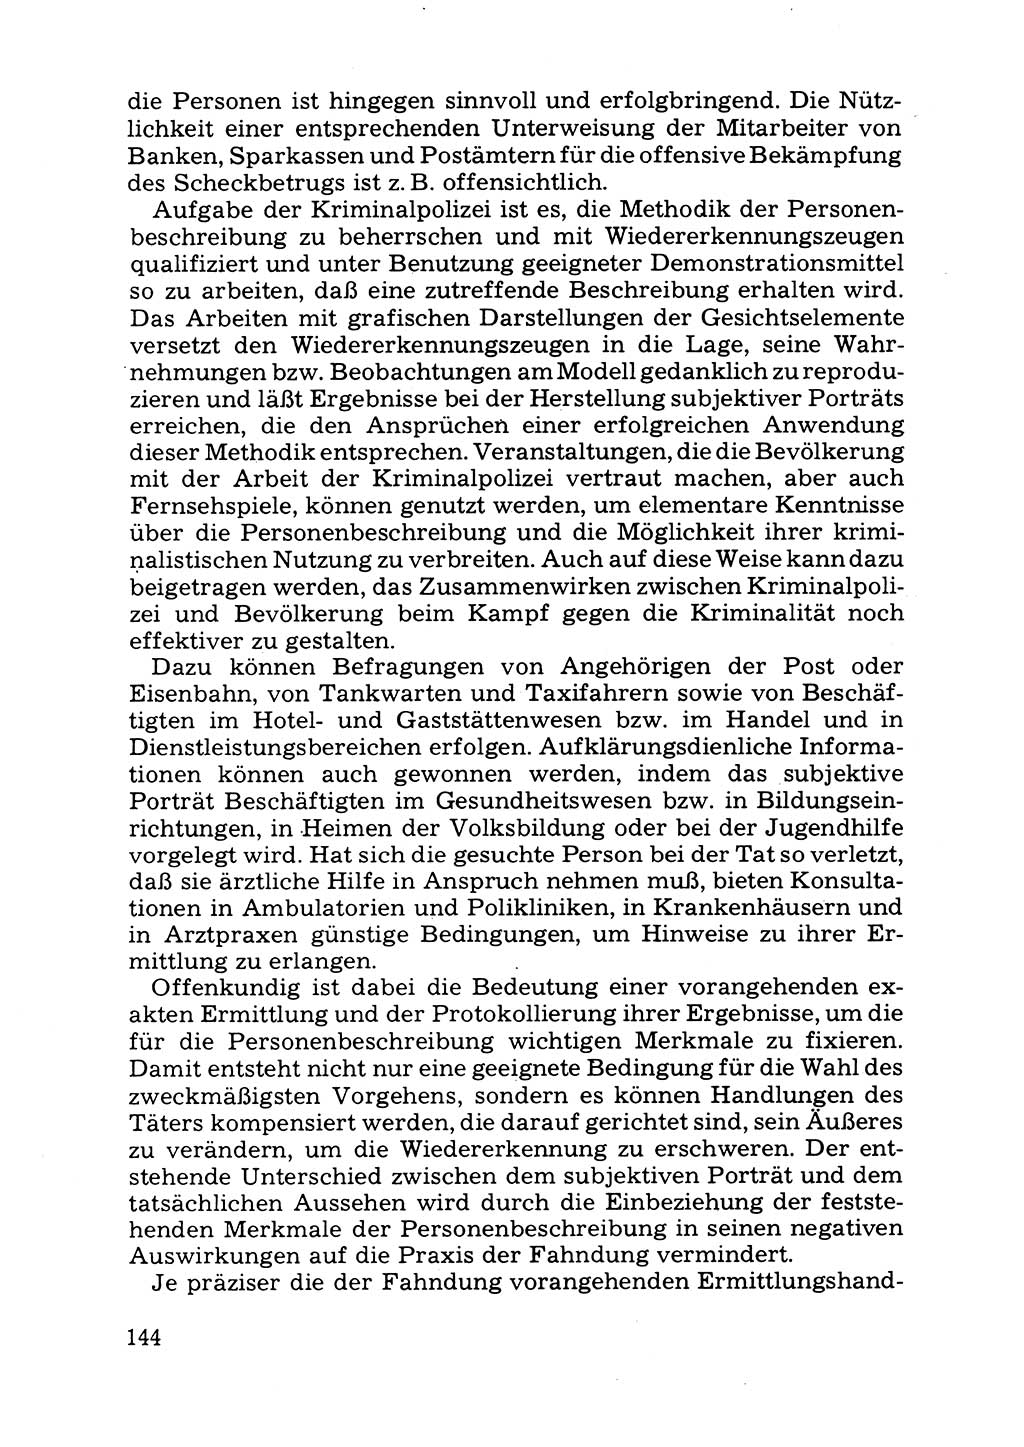 Das subjektive Porträt [Deutsche Demokratische Republik (DDR)] 1981, Seite 144 (Subj. Port. DDR 1981, S. 144)